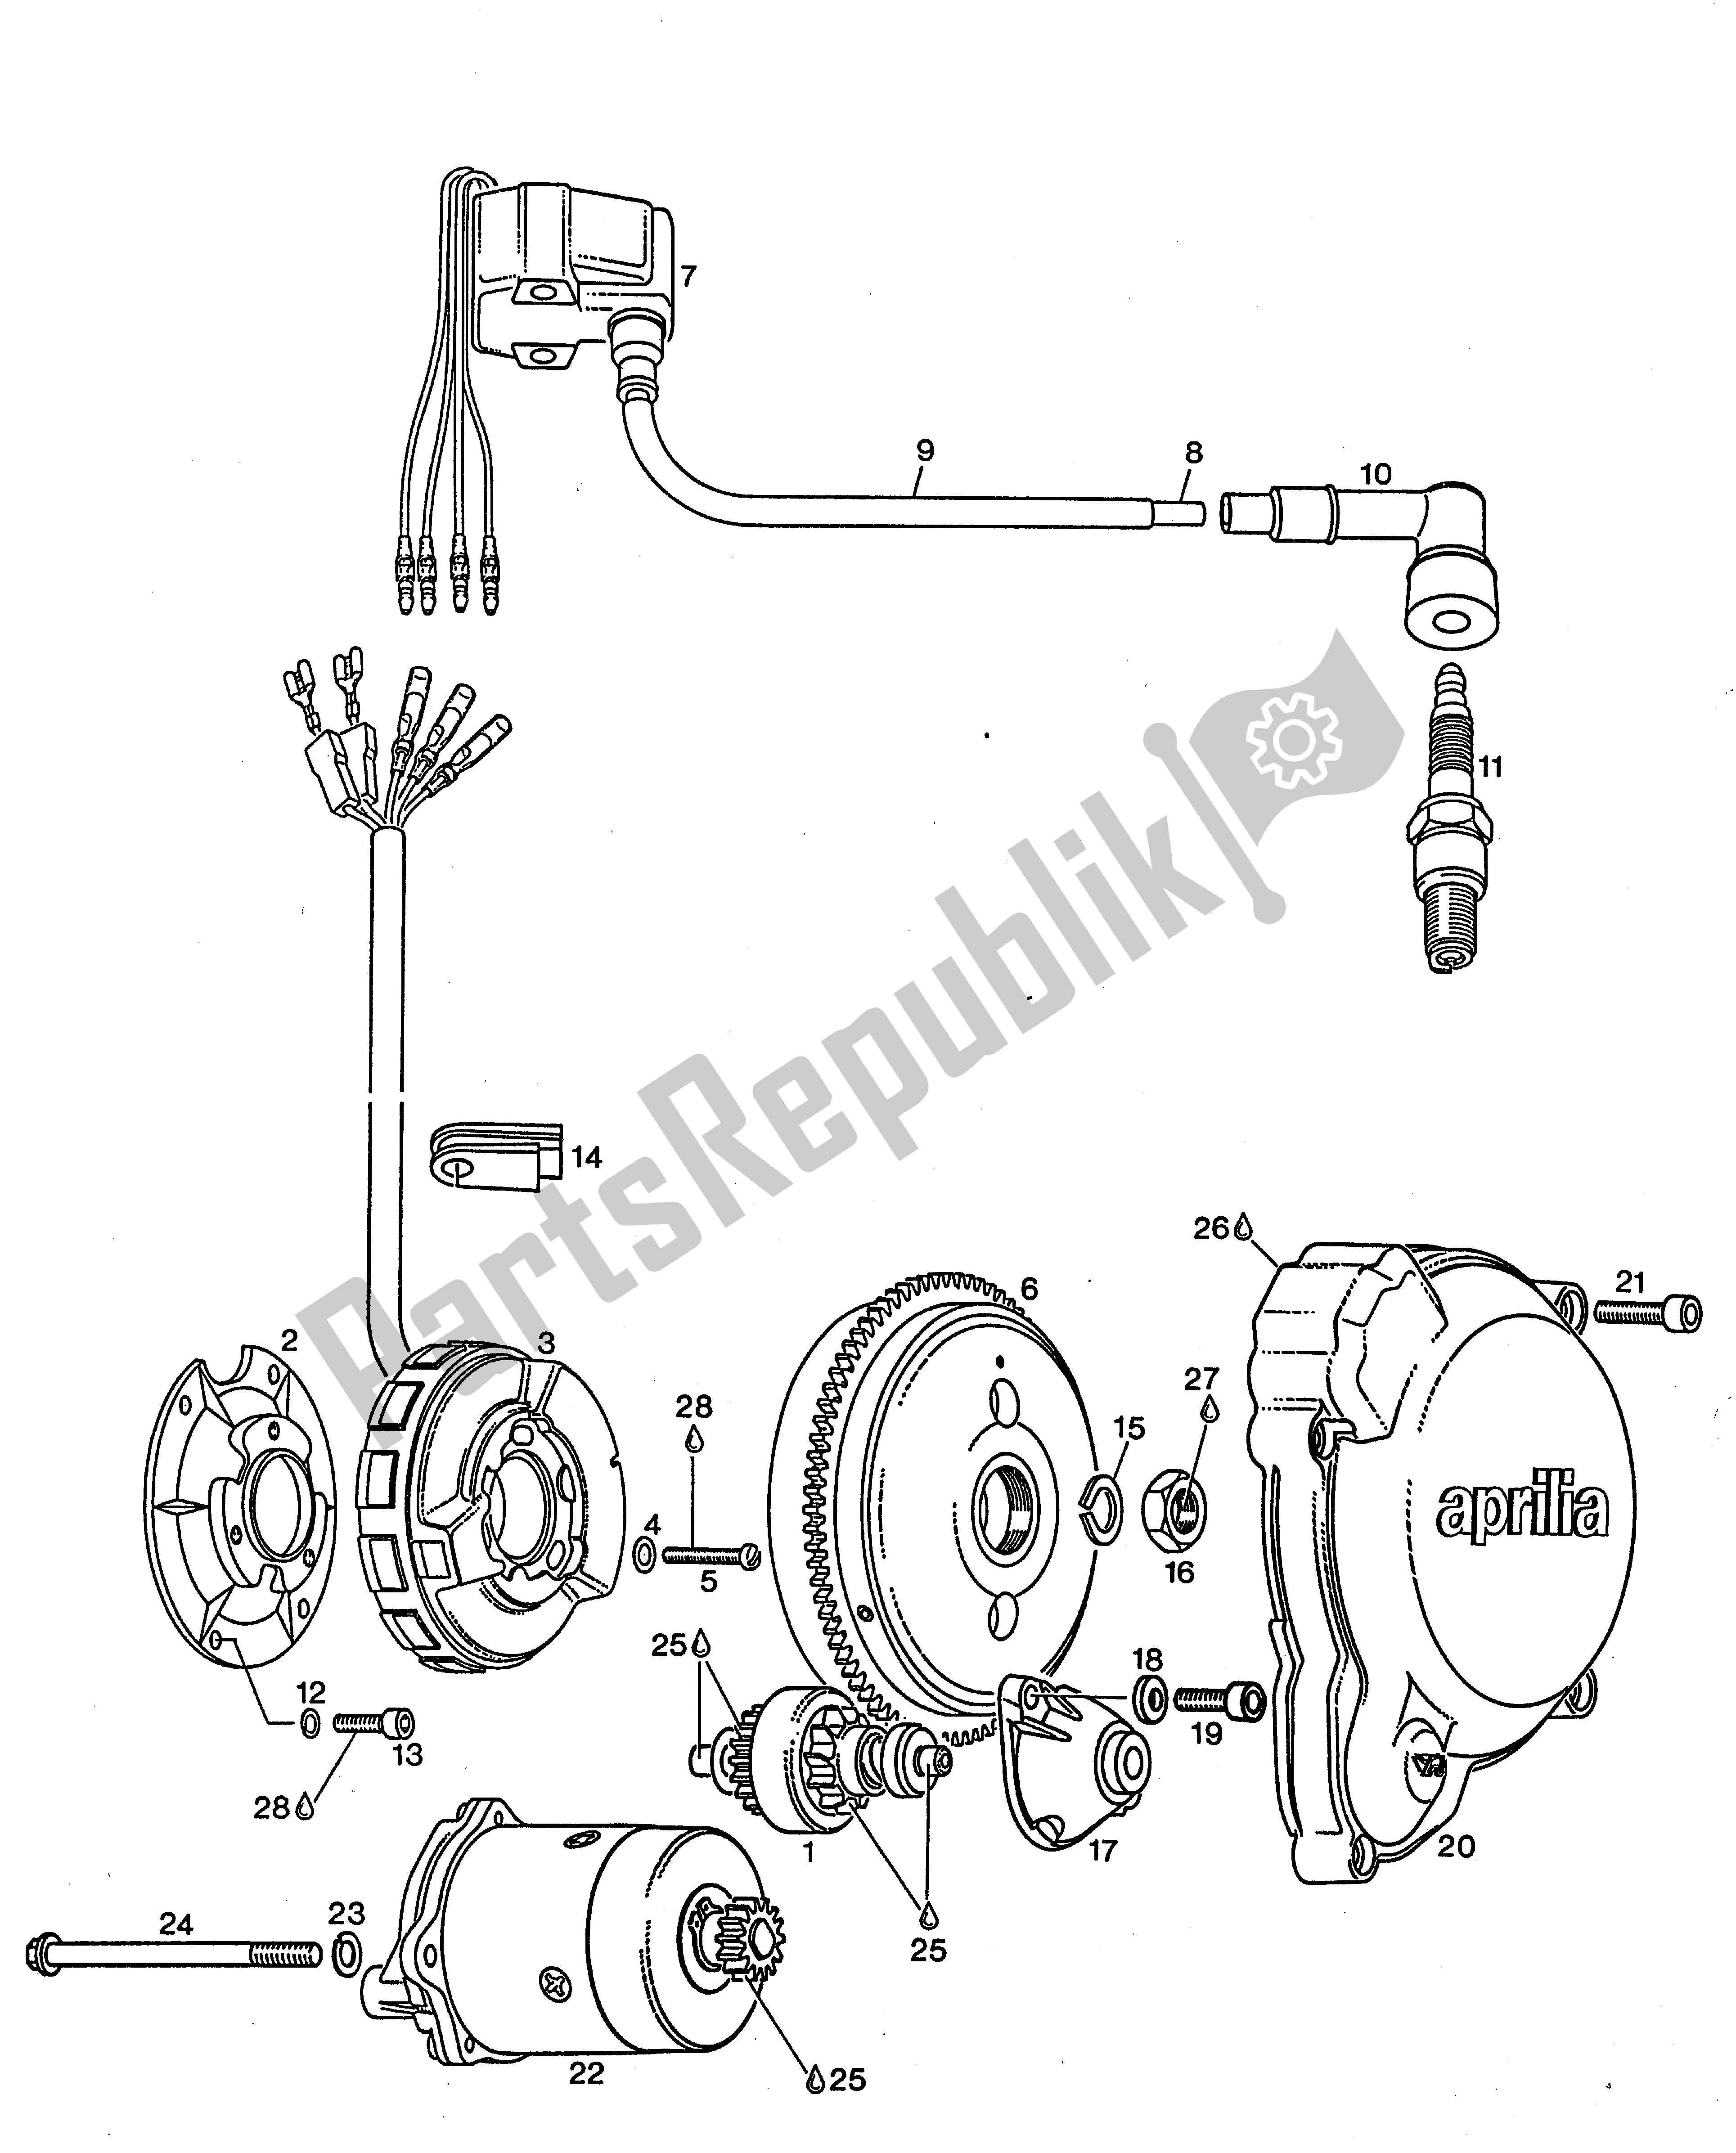 Alle Teile für das Sem Magnetzuender-generator, Elektrostarter,zuenderdeckel des Aprilia Rotax 123 125 1990 - 2000